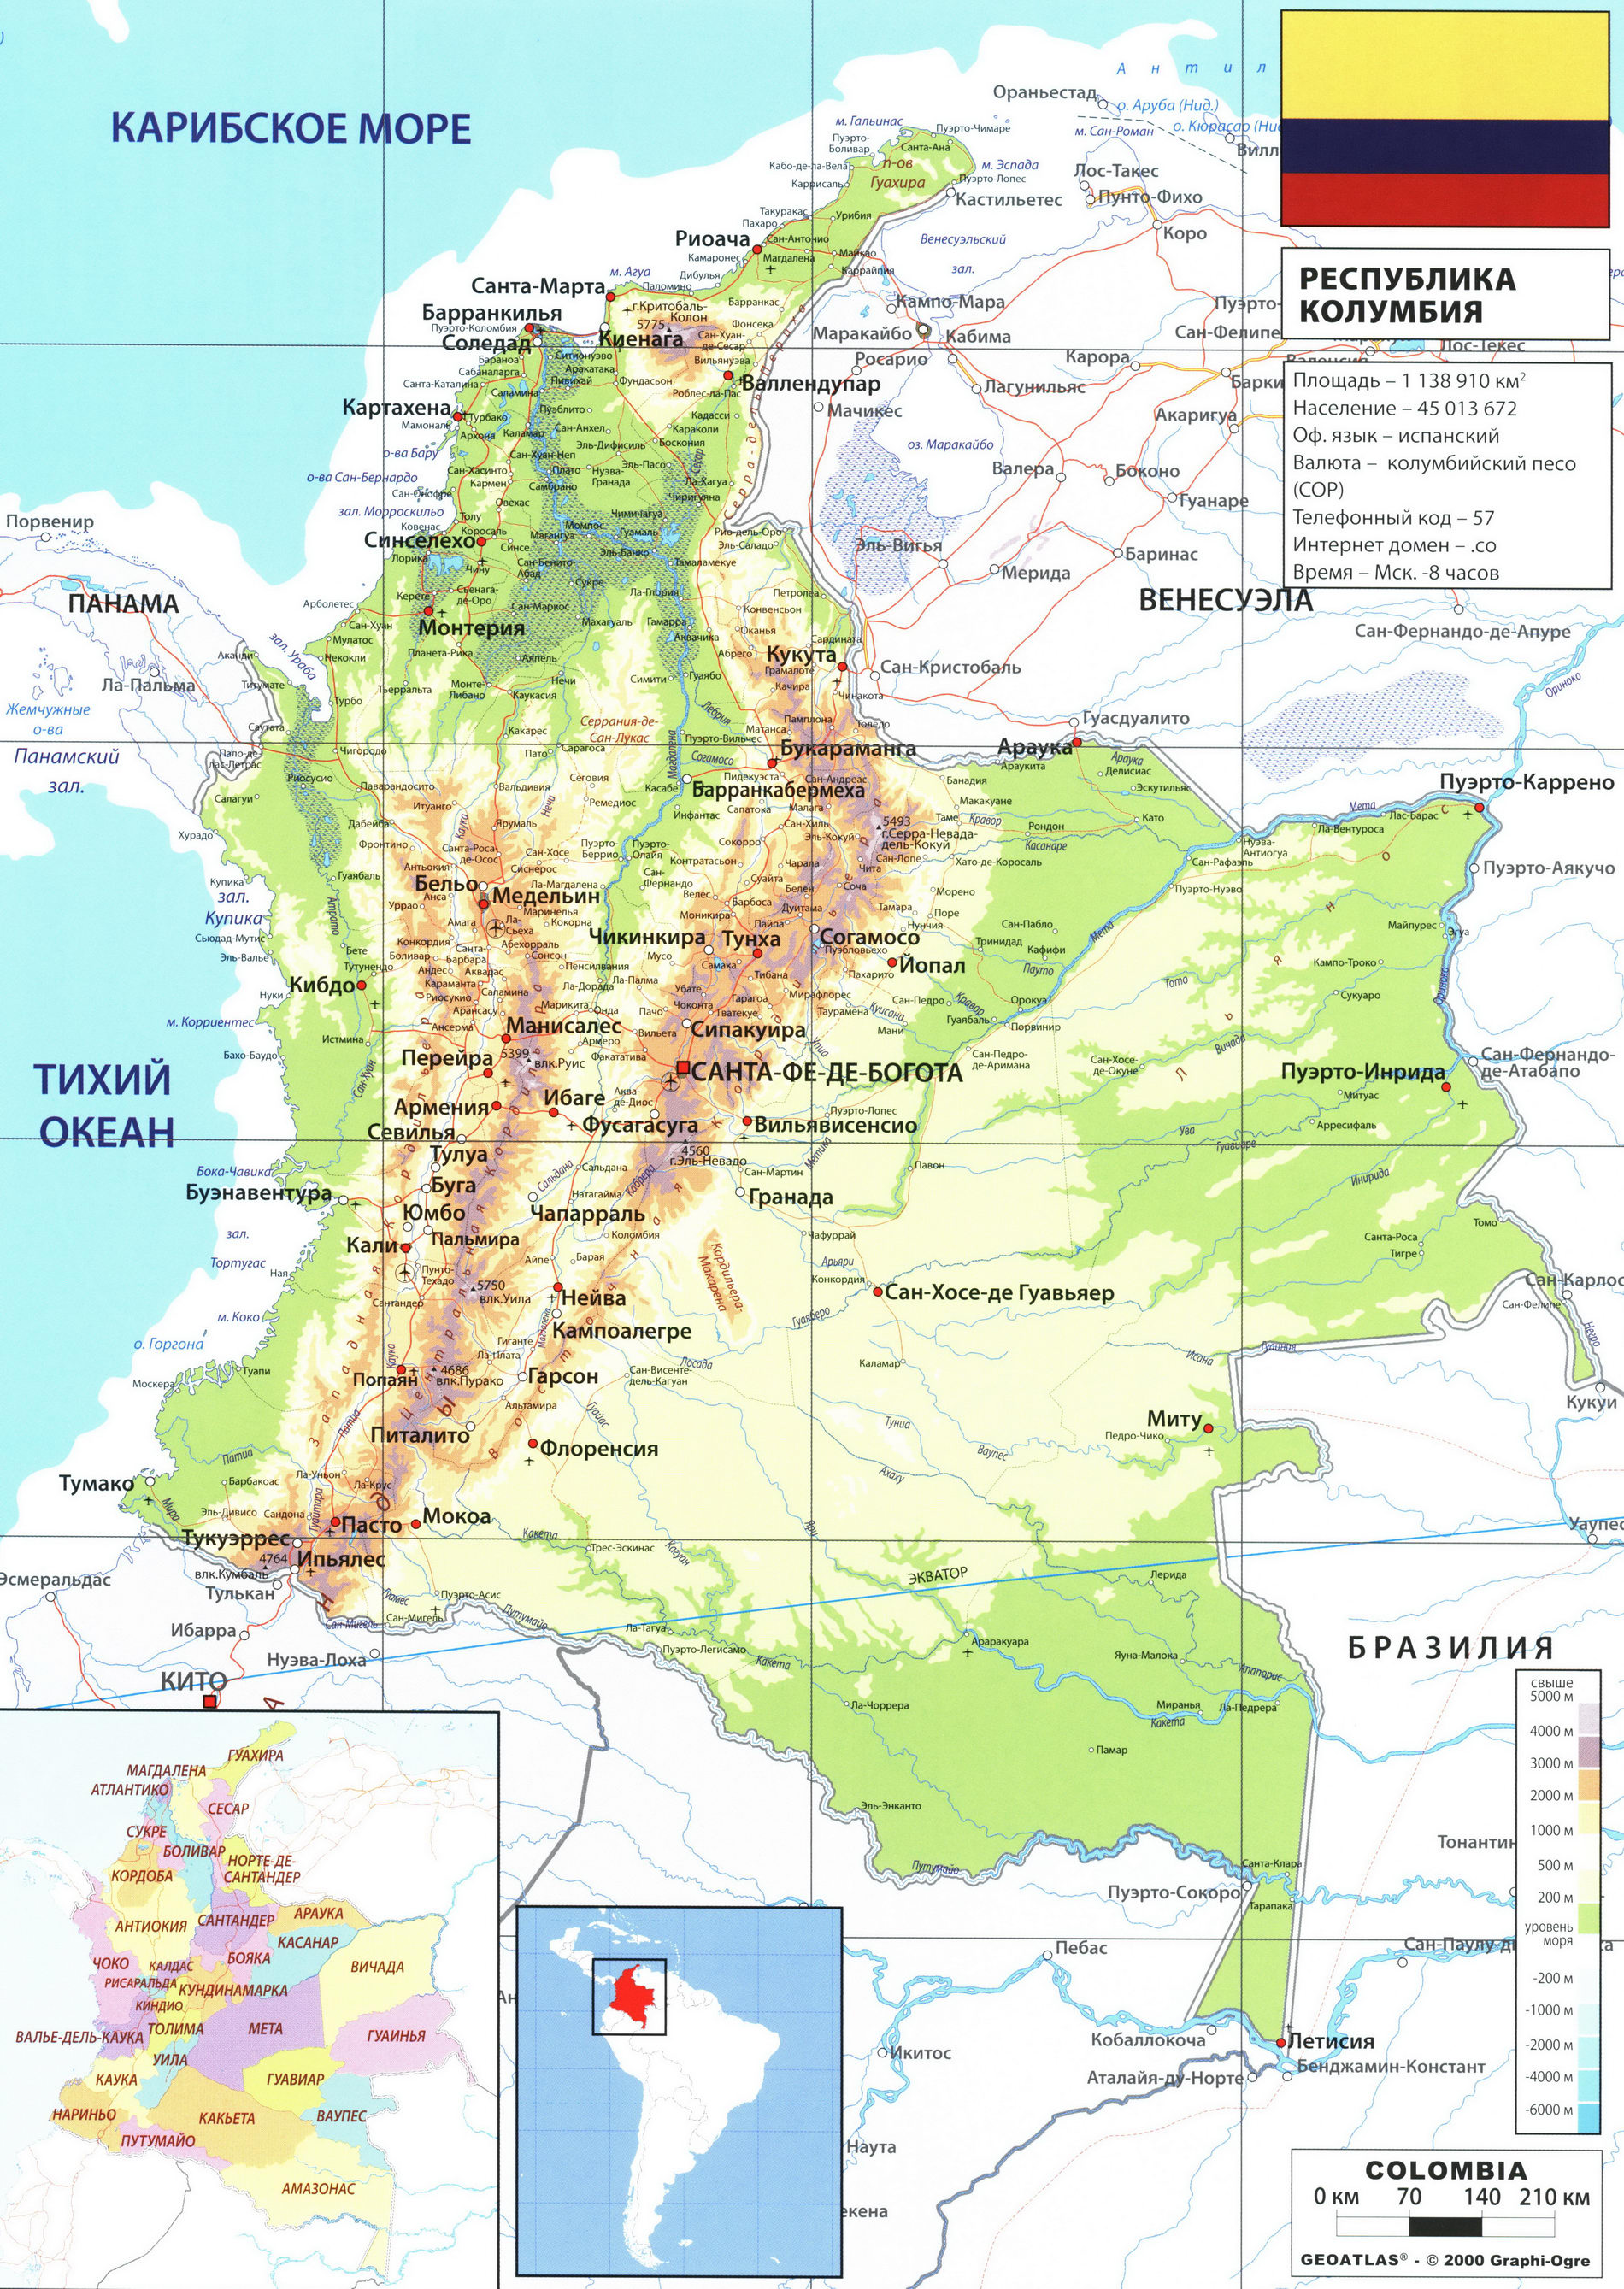 Колумбия карта на русском языке